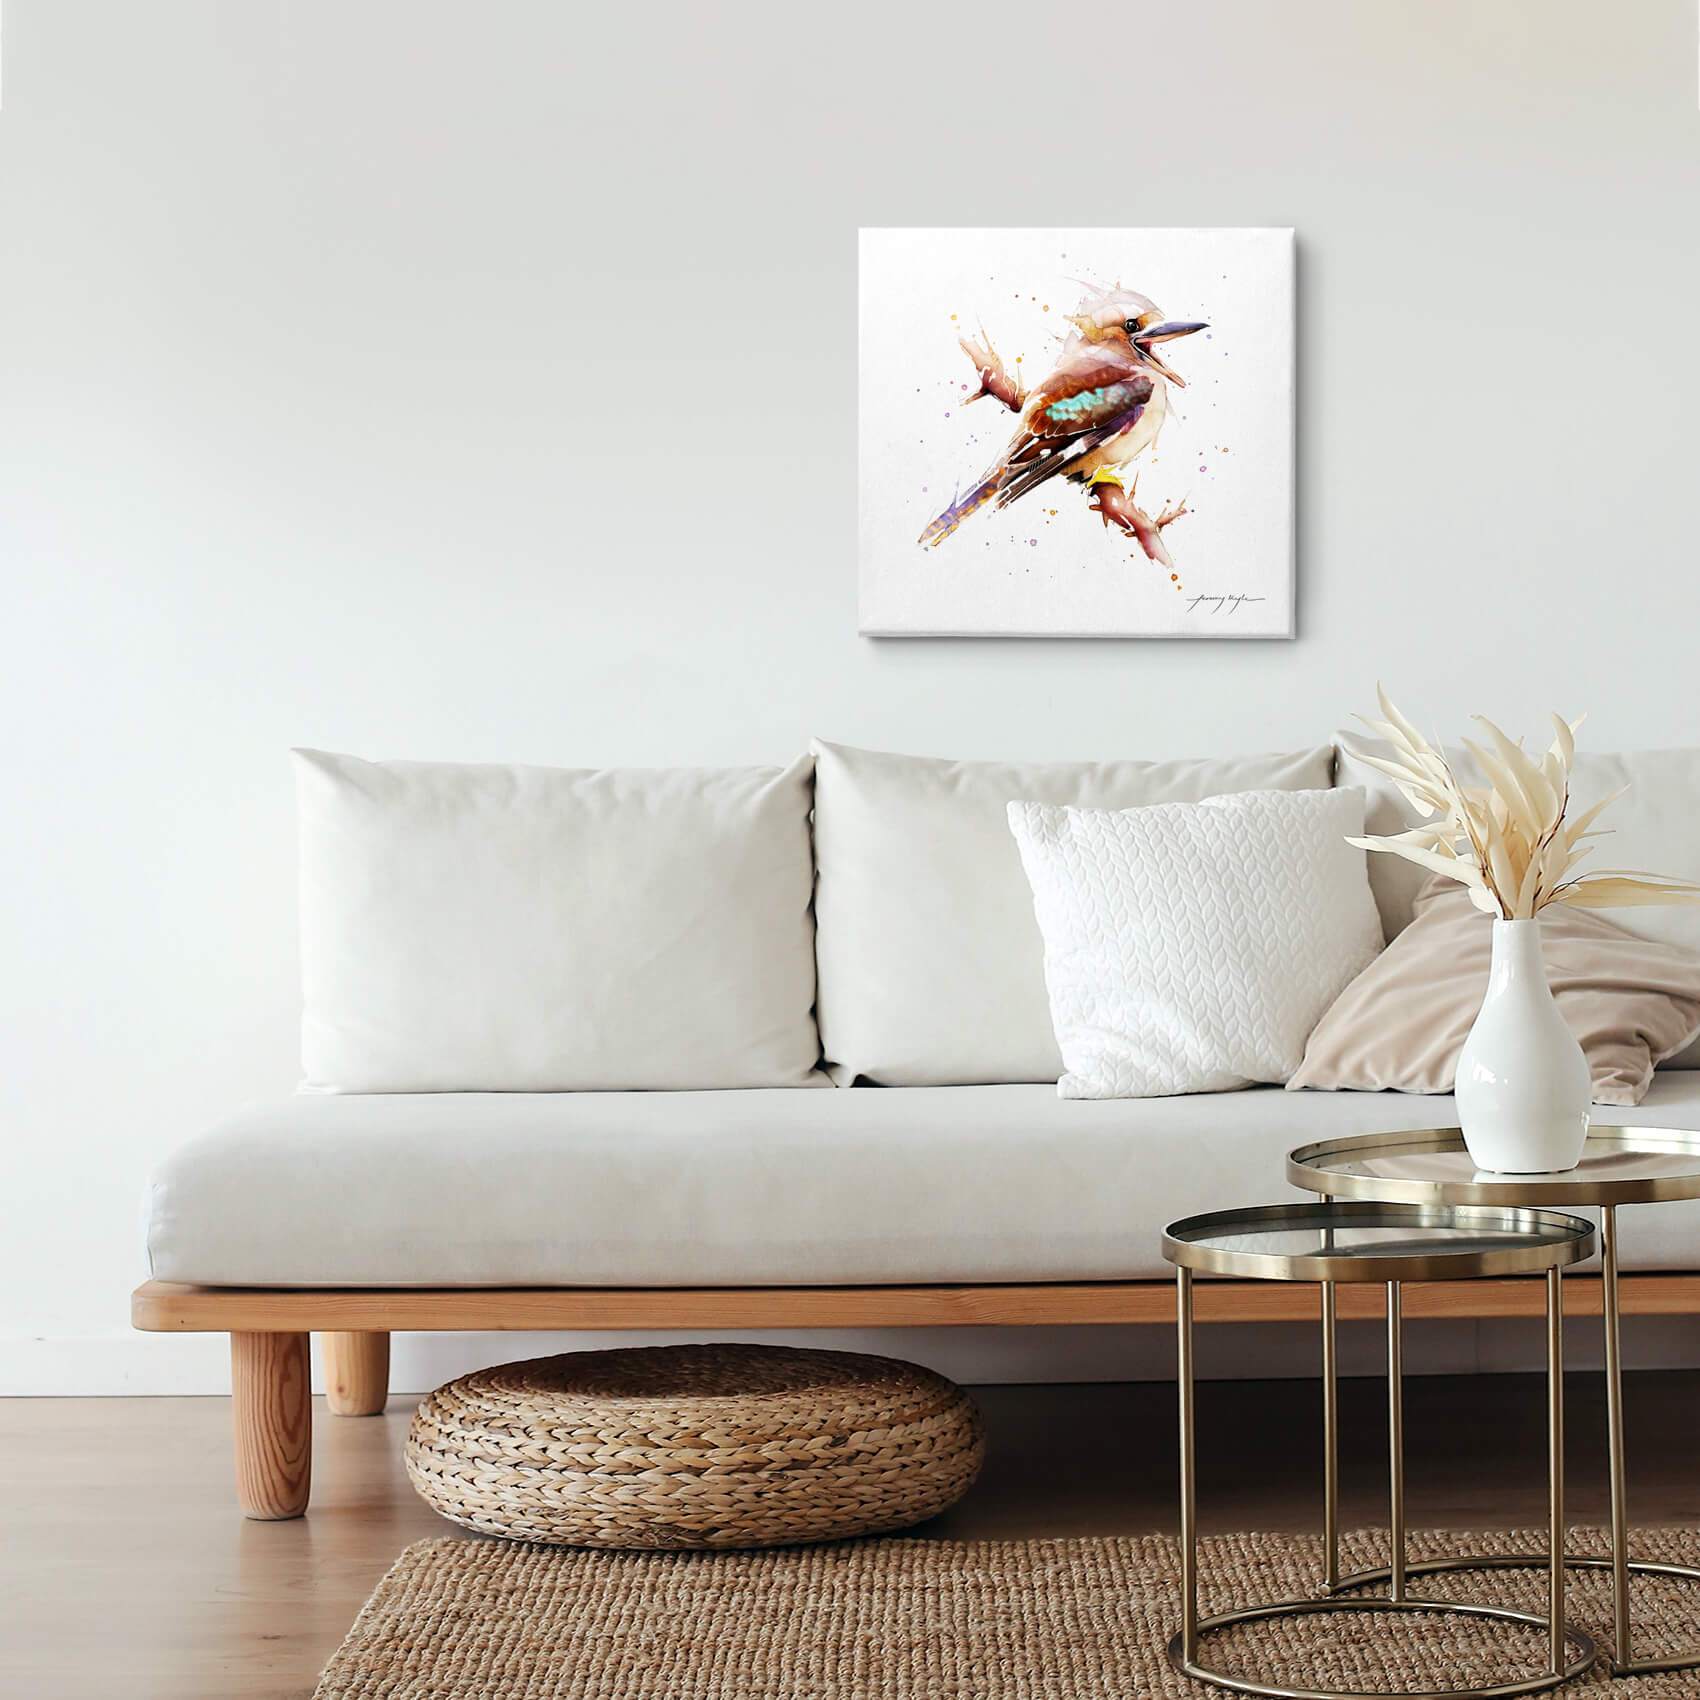 Kookaburra bird canvas wall art hanging in a living room.